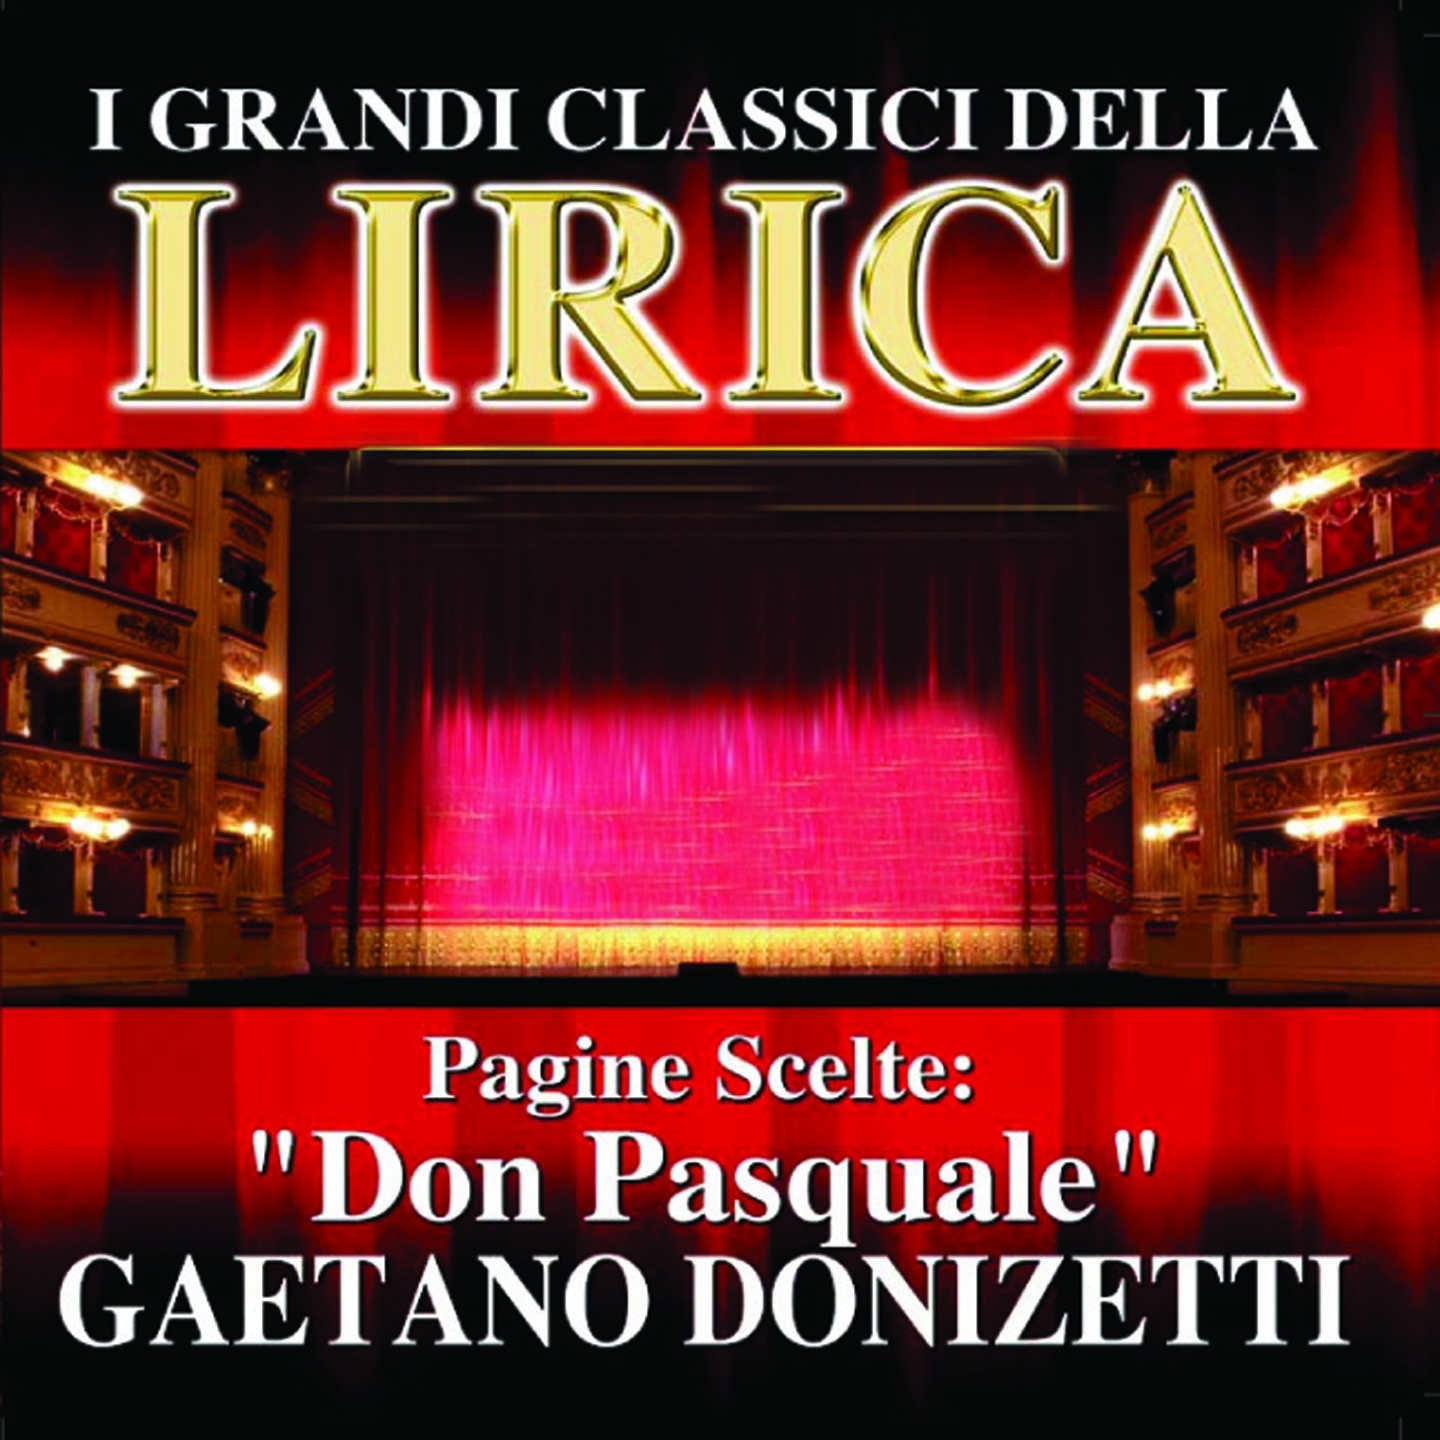 Gaetano Donizetti : Don Pasquale, Pagine scelte (I grandi classici della Lirica)